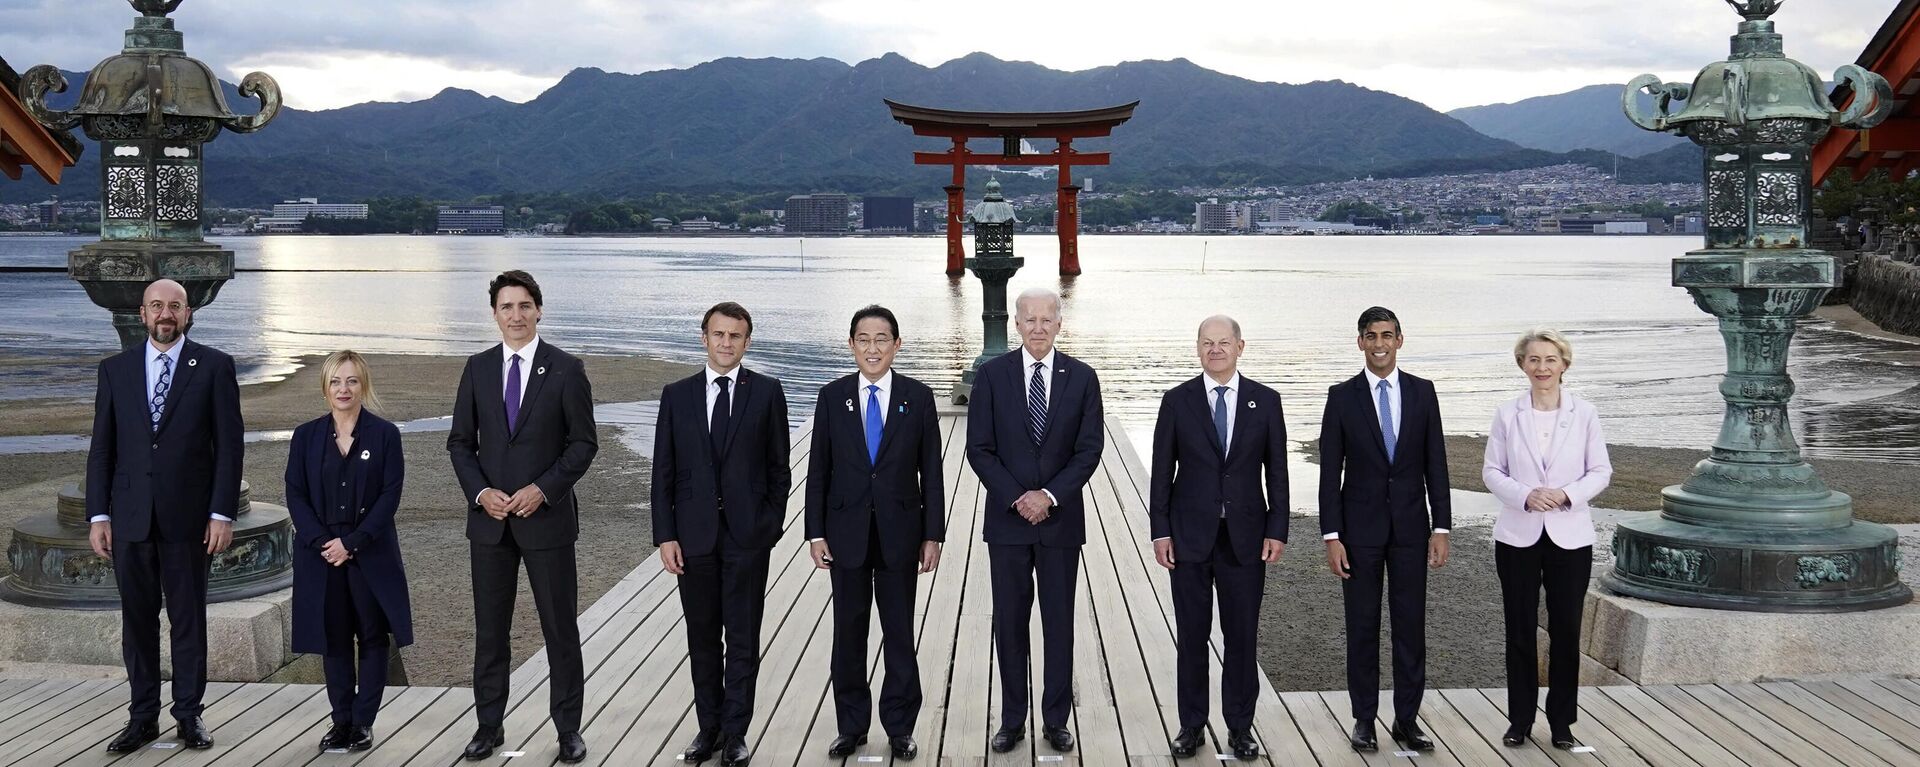 Các nhà lãnh đạo G7 thăm đền Itsukushima trên đảo Miyajima tại Hội nghị thượng đỉnh G7, Nhật Bản - Sputnik Việt Nam, 1920, 20.05.2023